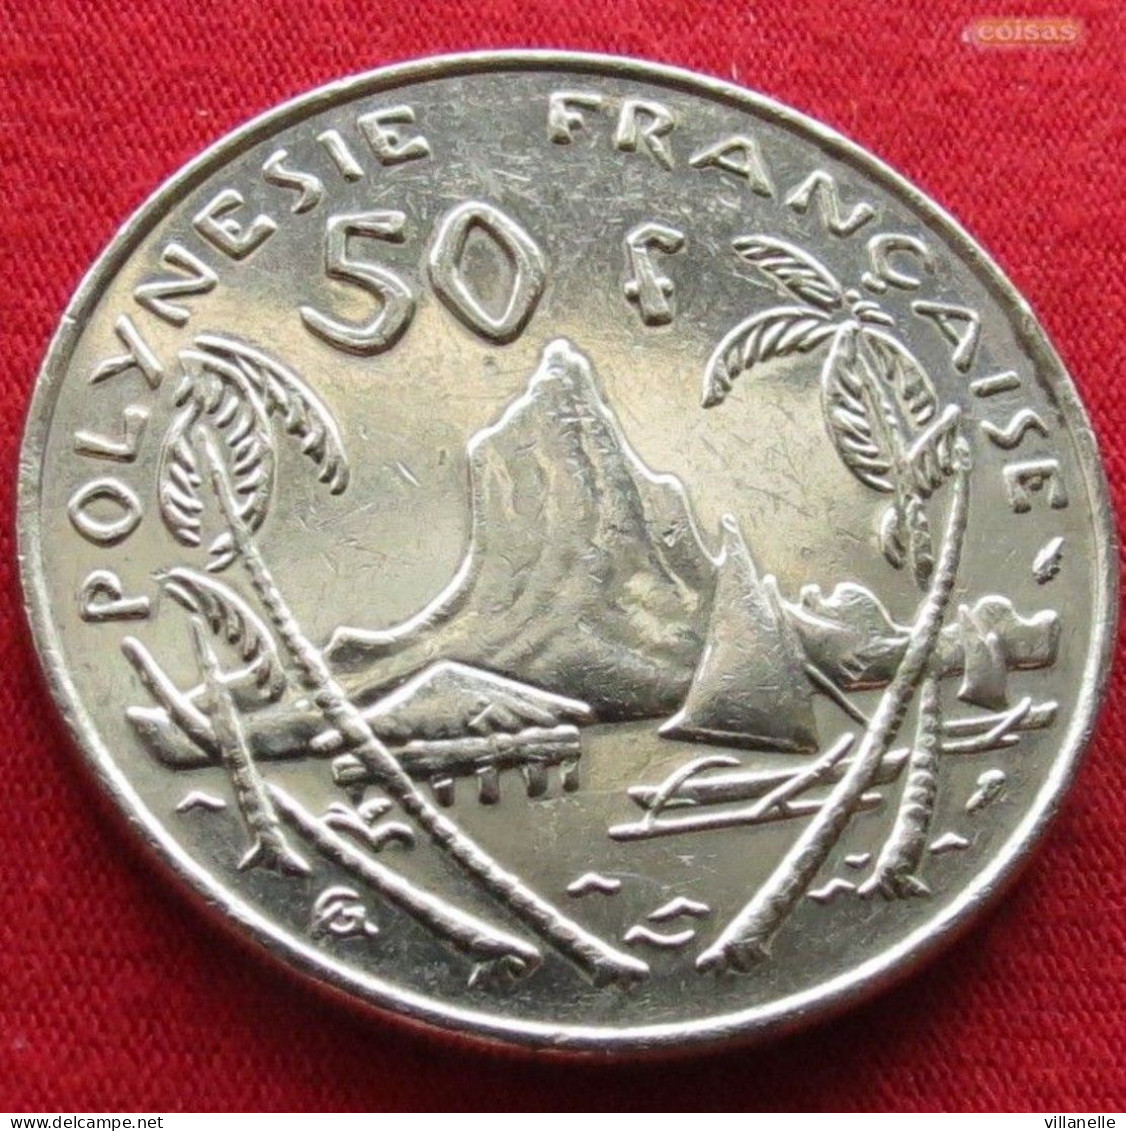 French Polynesia 50 Francs 1988 KM# 13 *V1T Polynesie Polinesia - Polynésie Française